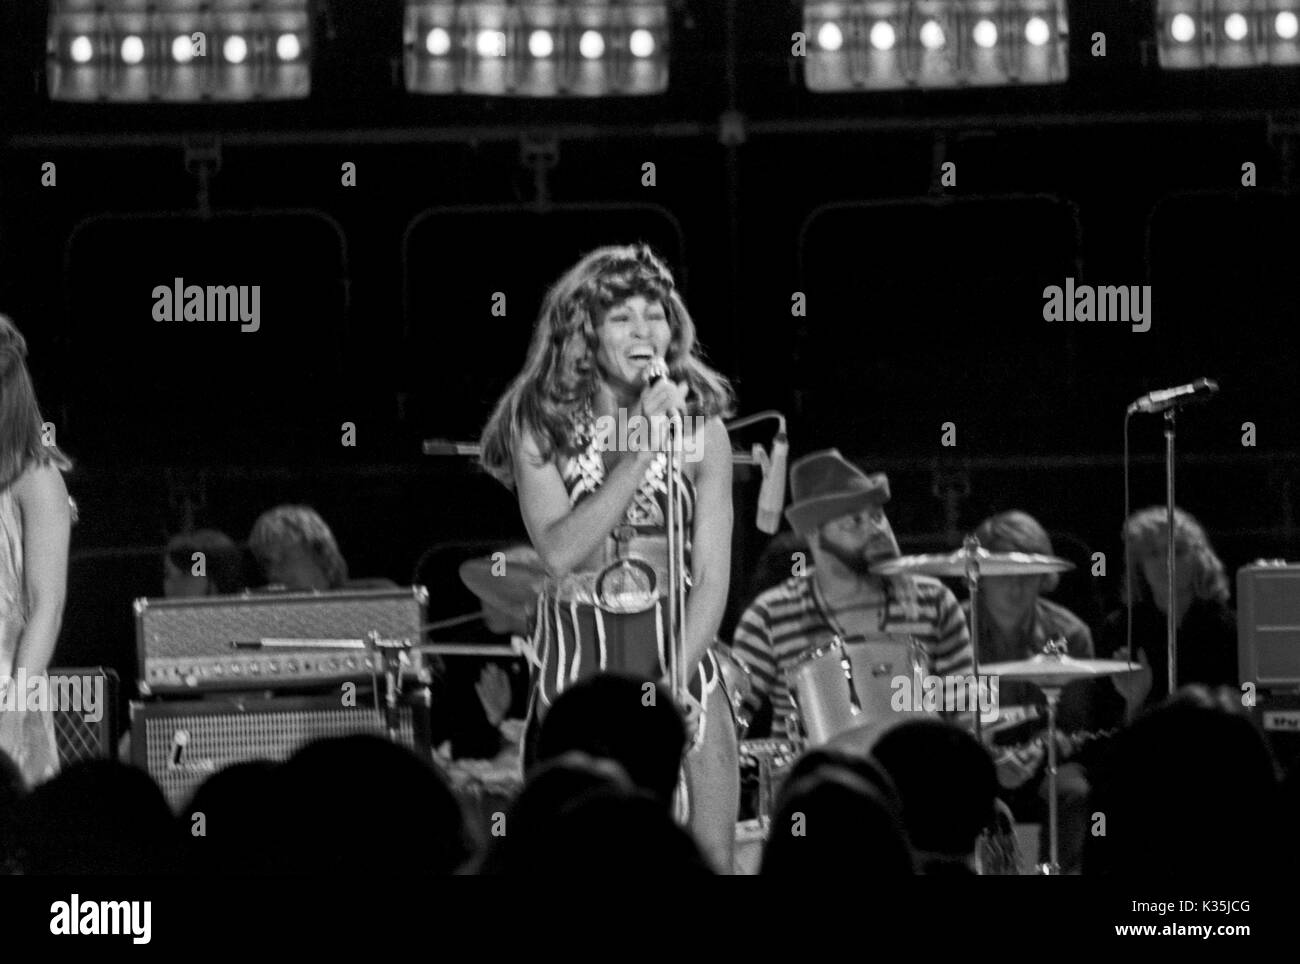 Amerikanische Sängerin Tina Turner bei einem Fernsehauftritt, Deutschland 1970er Jahre. American singer Tina Turner performing in German TV, Germany 1970s. Stock Photo